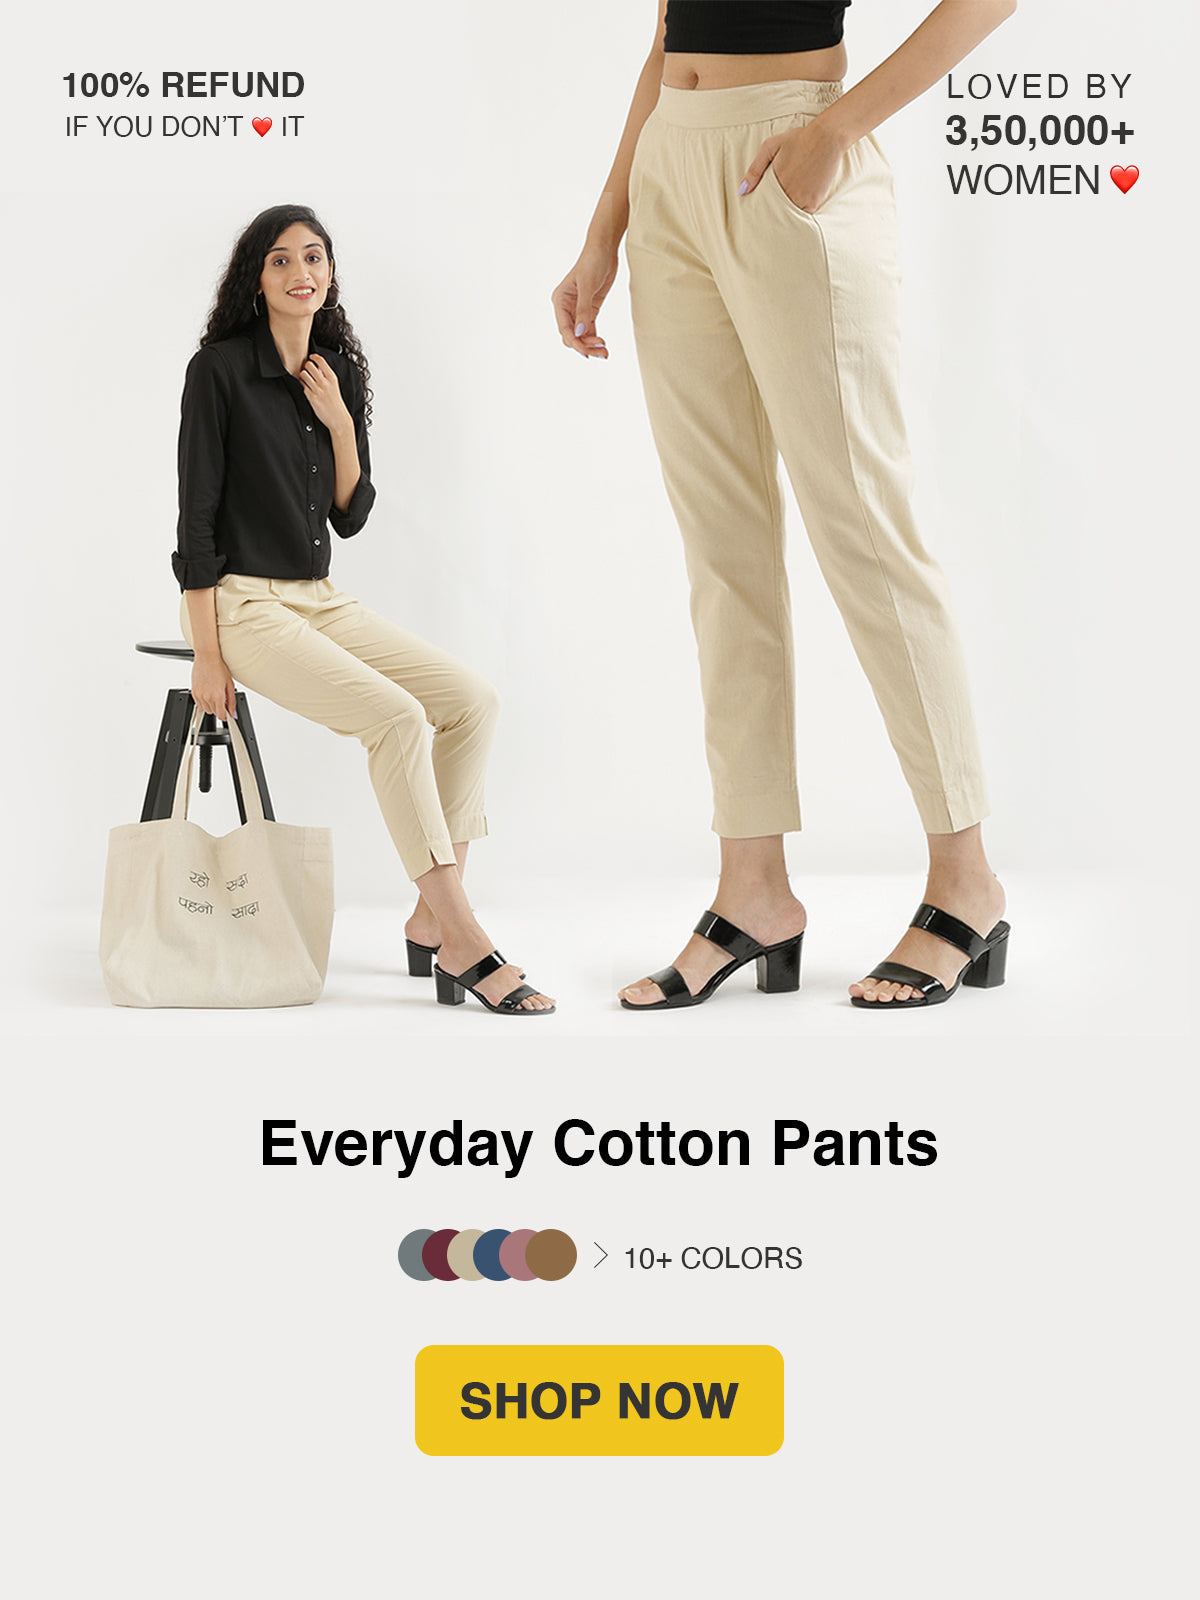 Cotton Pants For Women